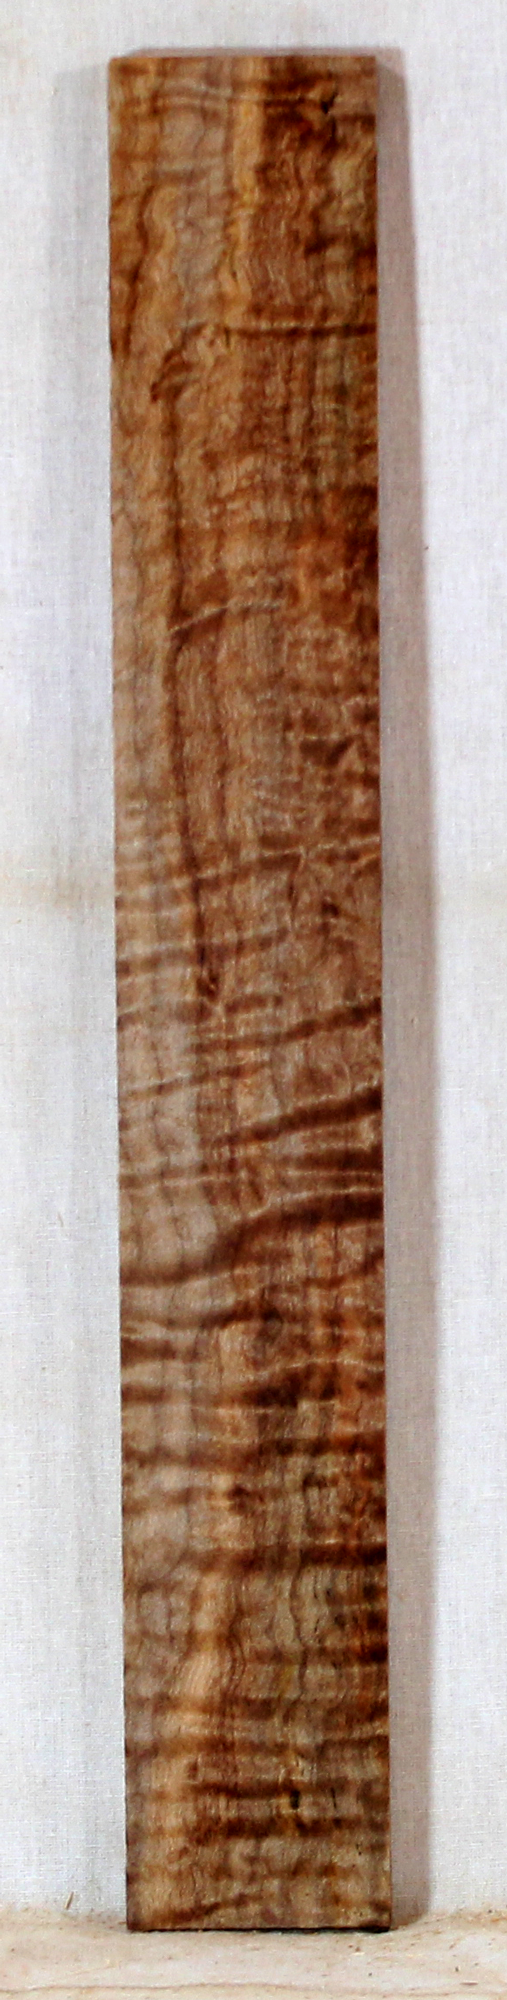 Maple Ukulele Fingerboard Stabilized (EG76)